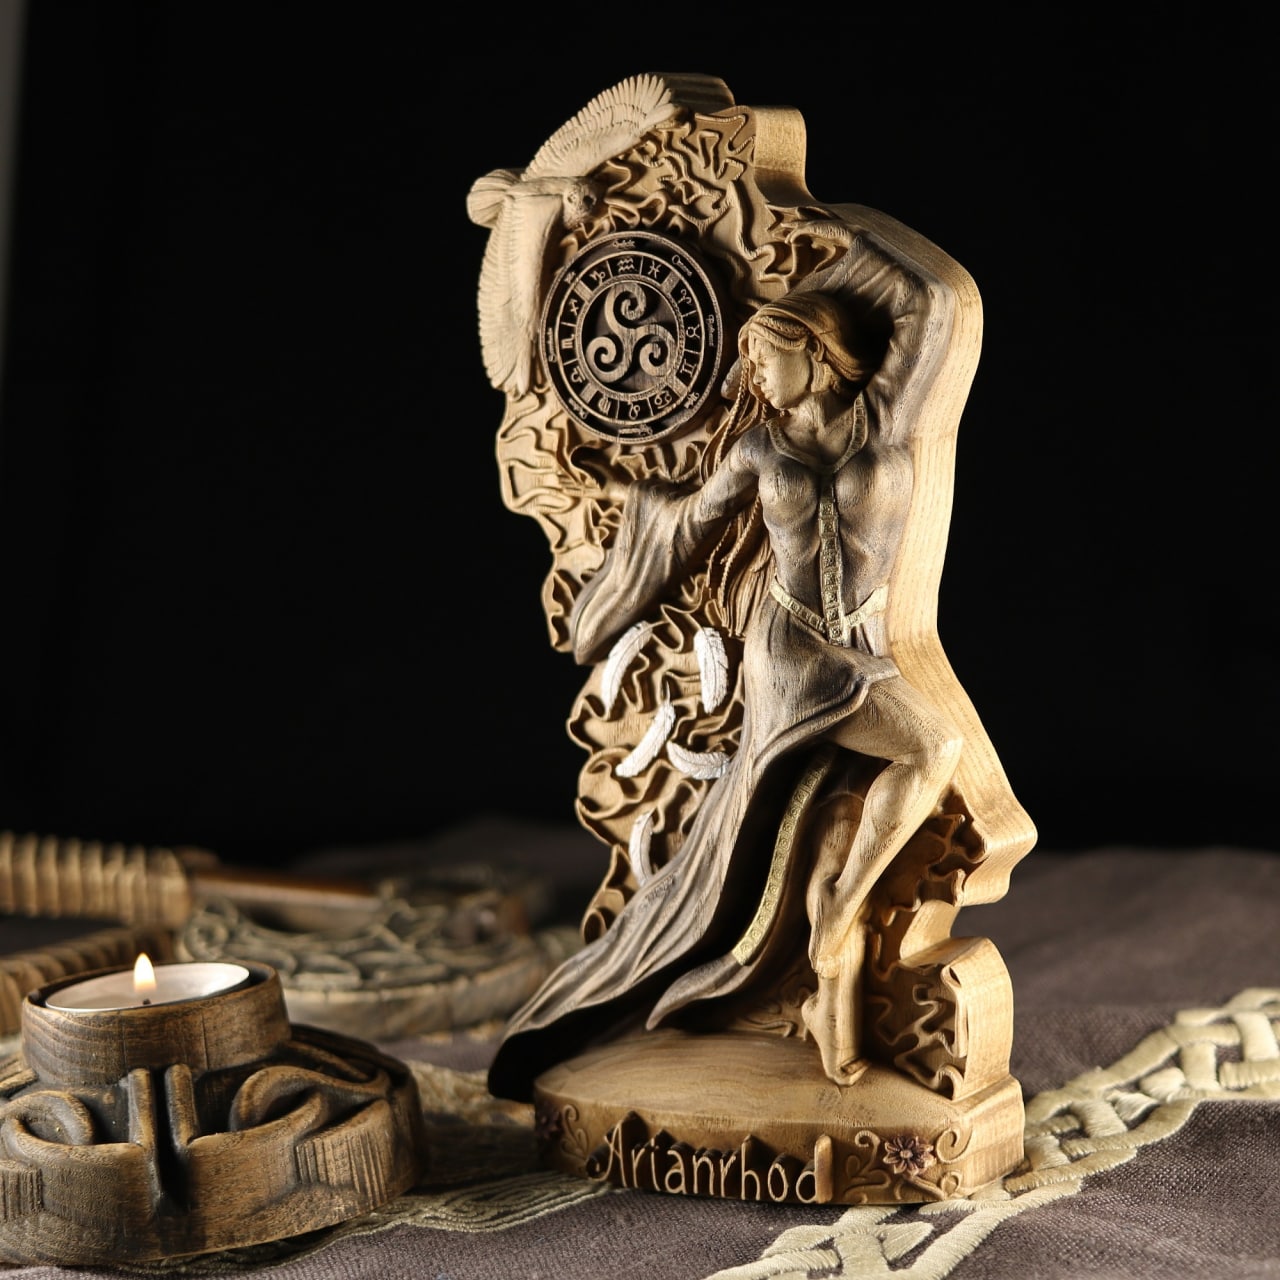 Arianrhod, Moon goddess, Wooden goddess statue Celtic goddess